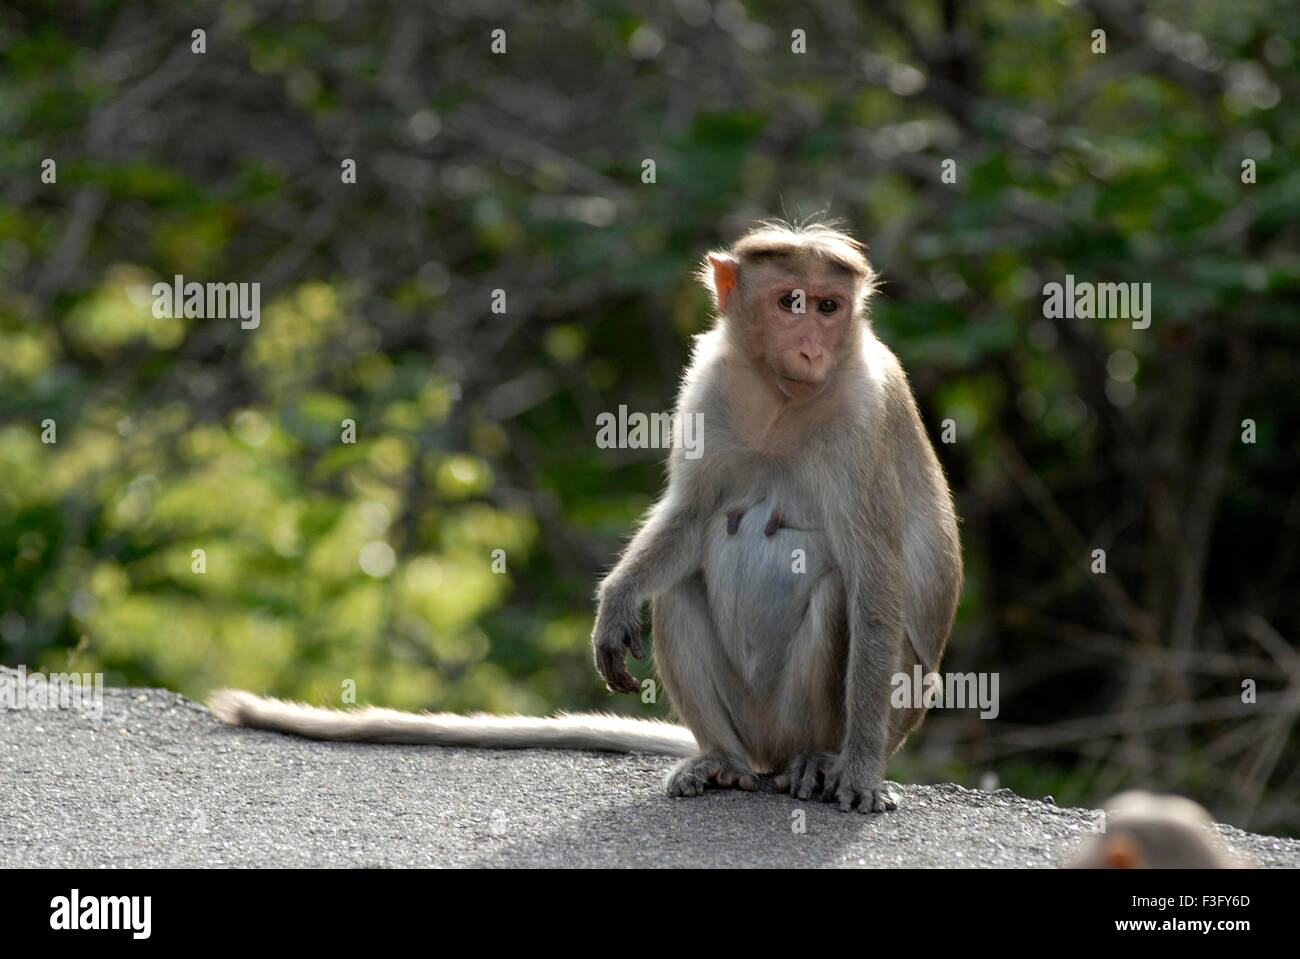 Bonnet monkey route de colline boisée ; Palamuthircholai ; Tamil Nadu Inde ; Banque D'Images